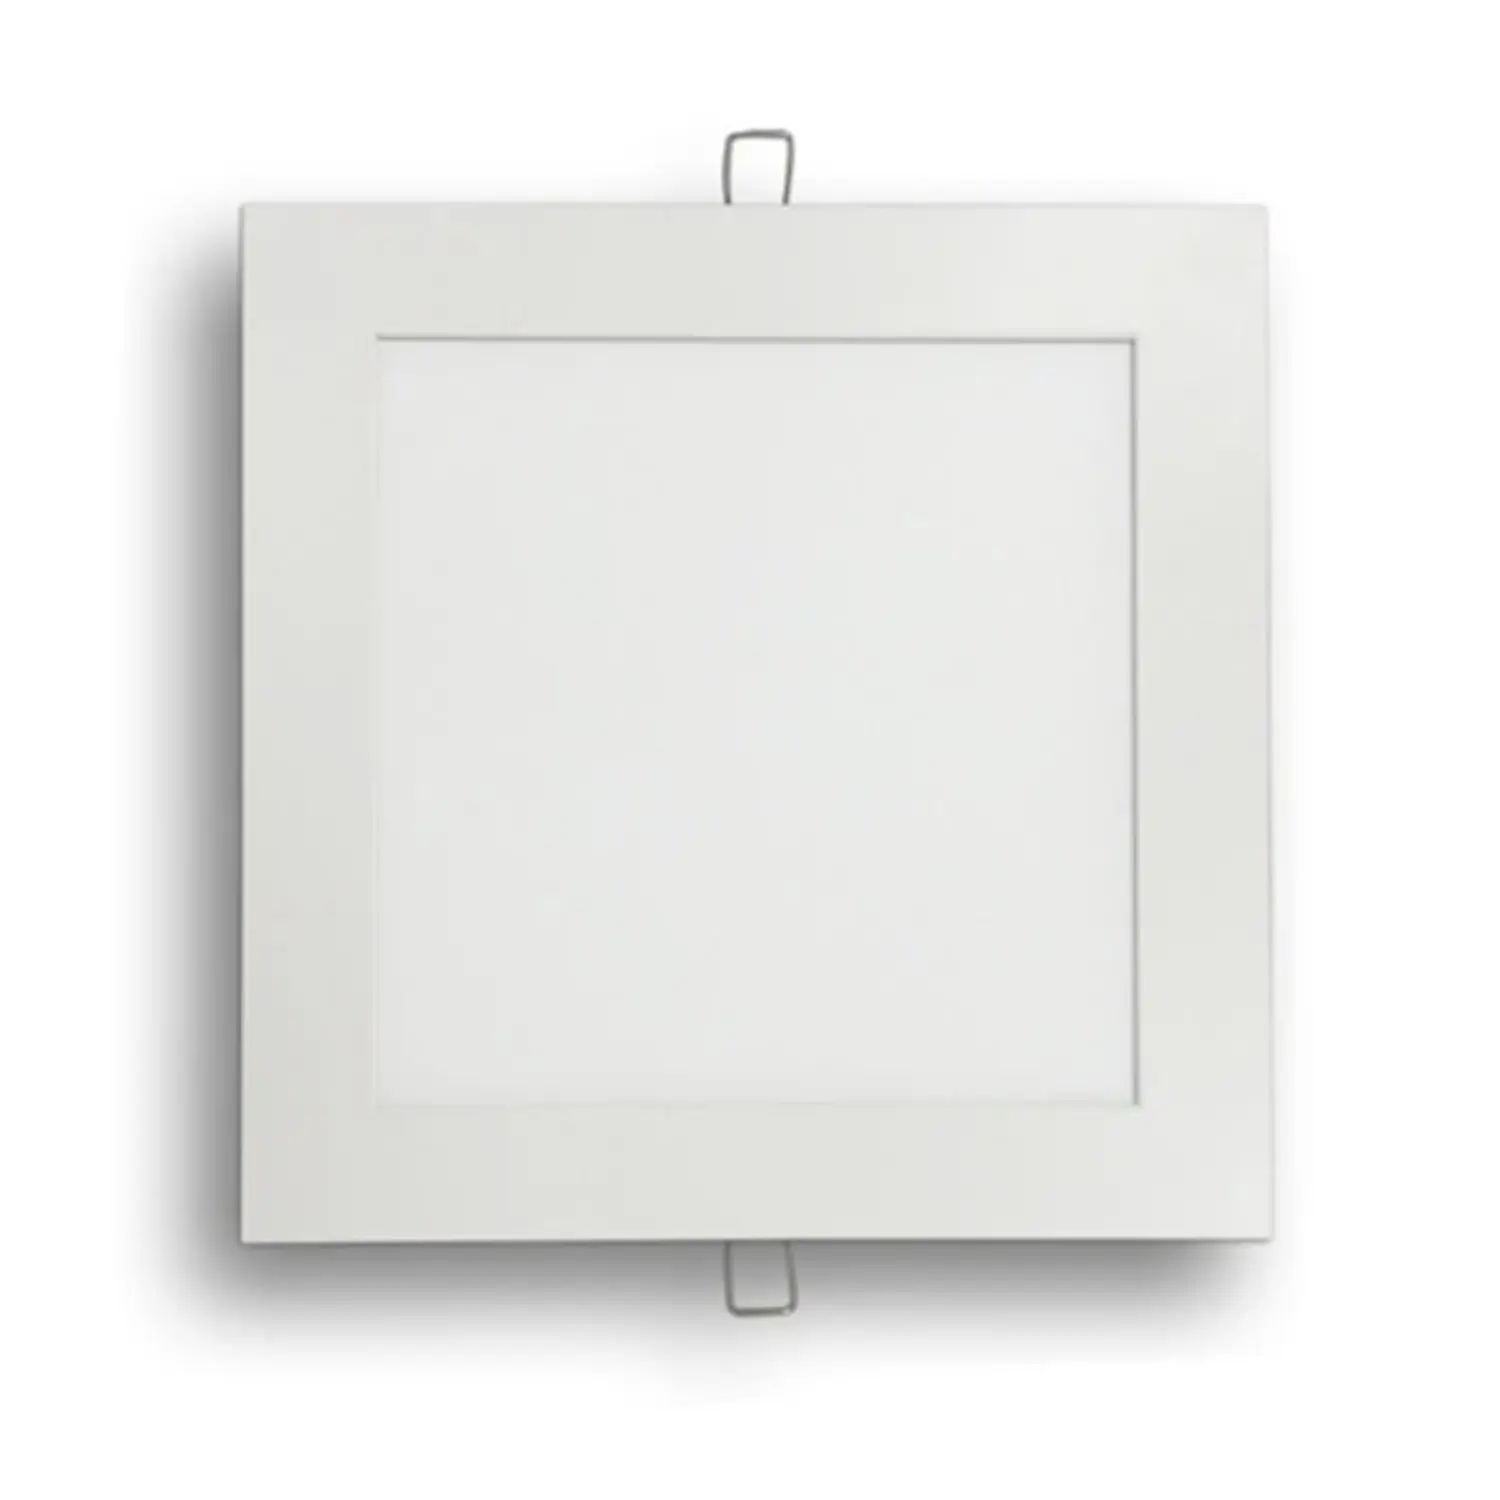 immagine del prodotto pannello led slim faretto incasso chip samsung 6 watt bianco caldo quadrato